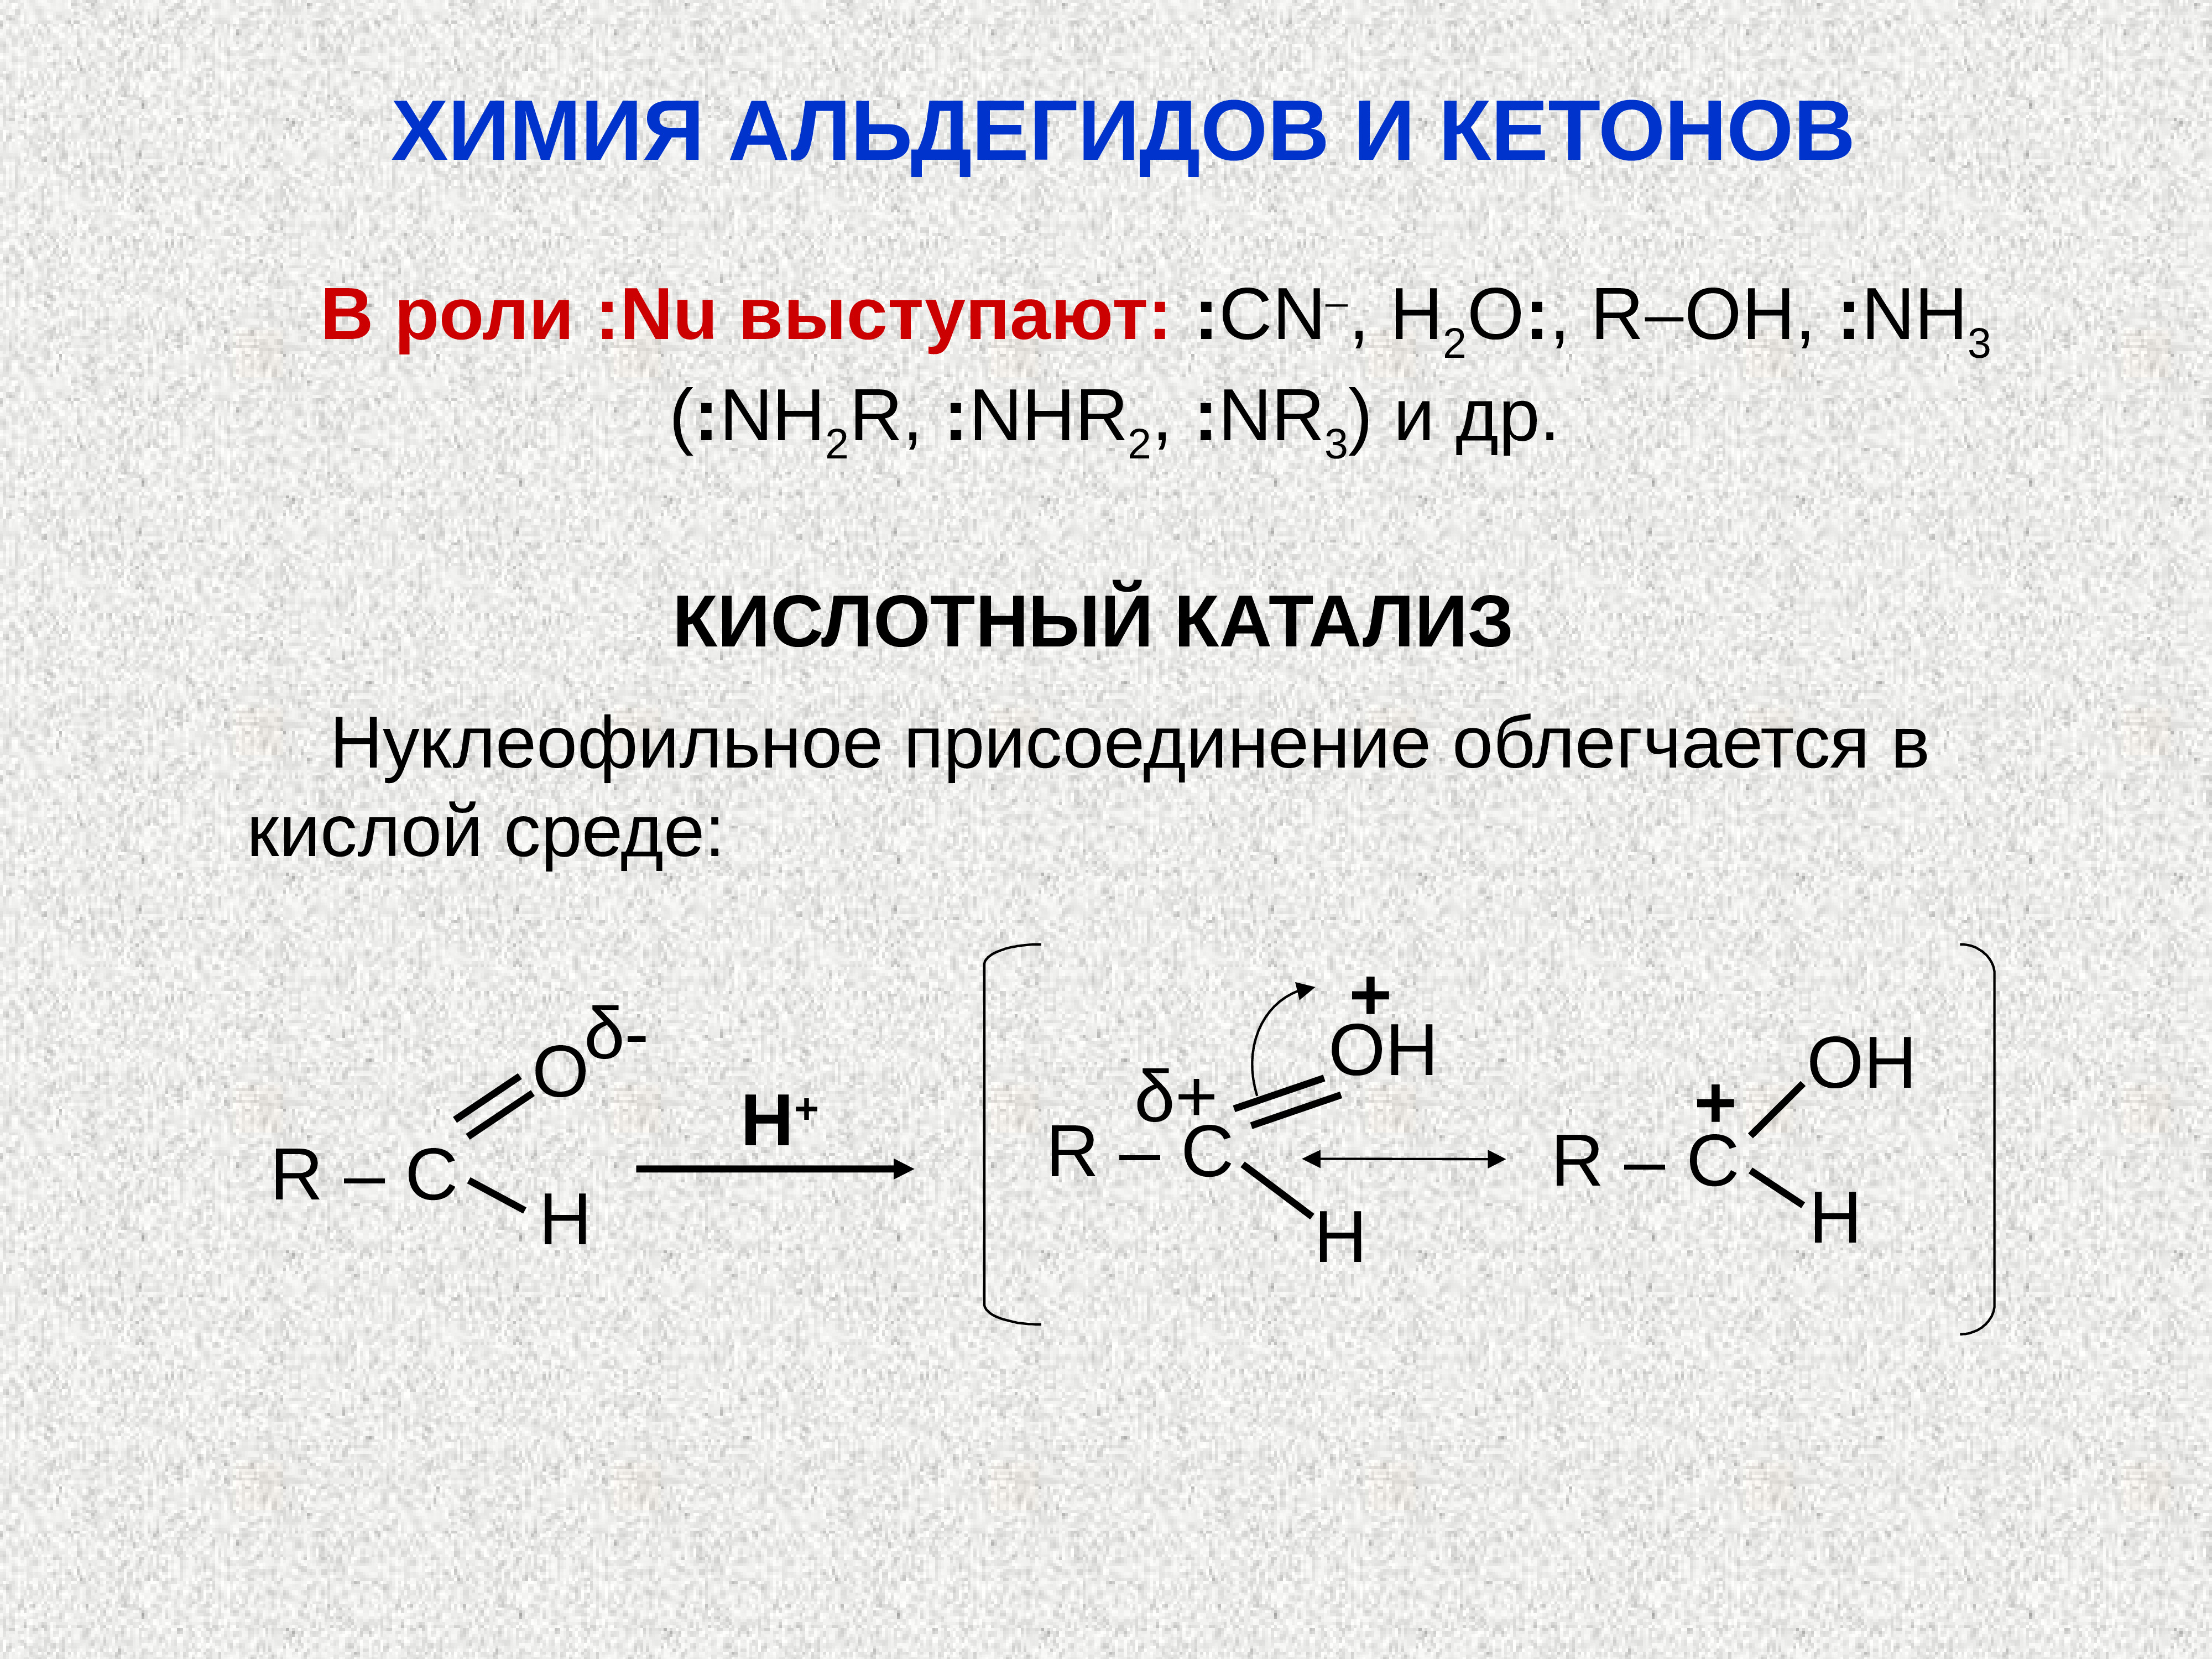 Роль катализа. Щелочной катализ альдегида. Кислотный катализ альдегидов. Основный катализ альдегидов и кетонов. Роль кислотного катализа альдегидов и кетонов.